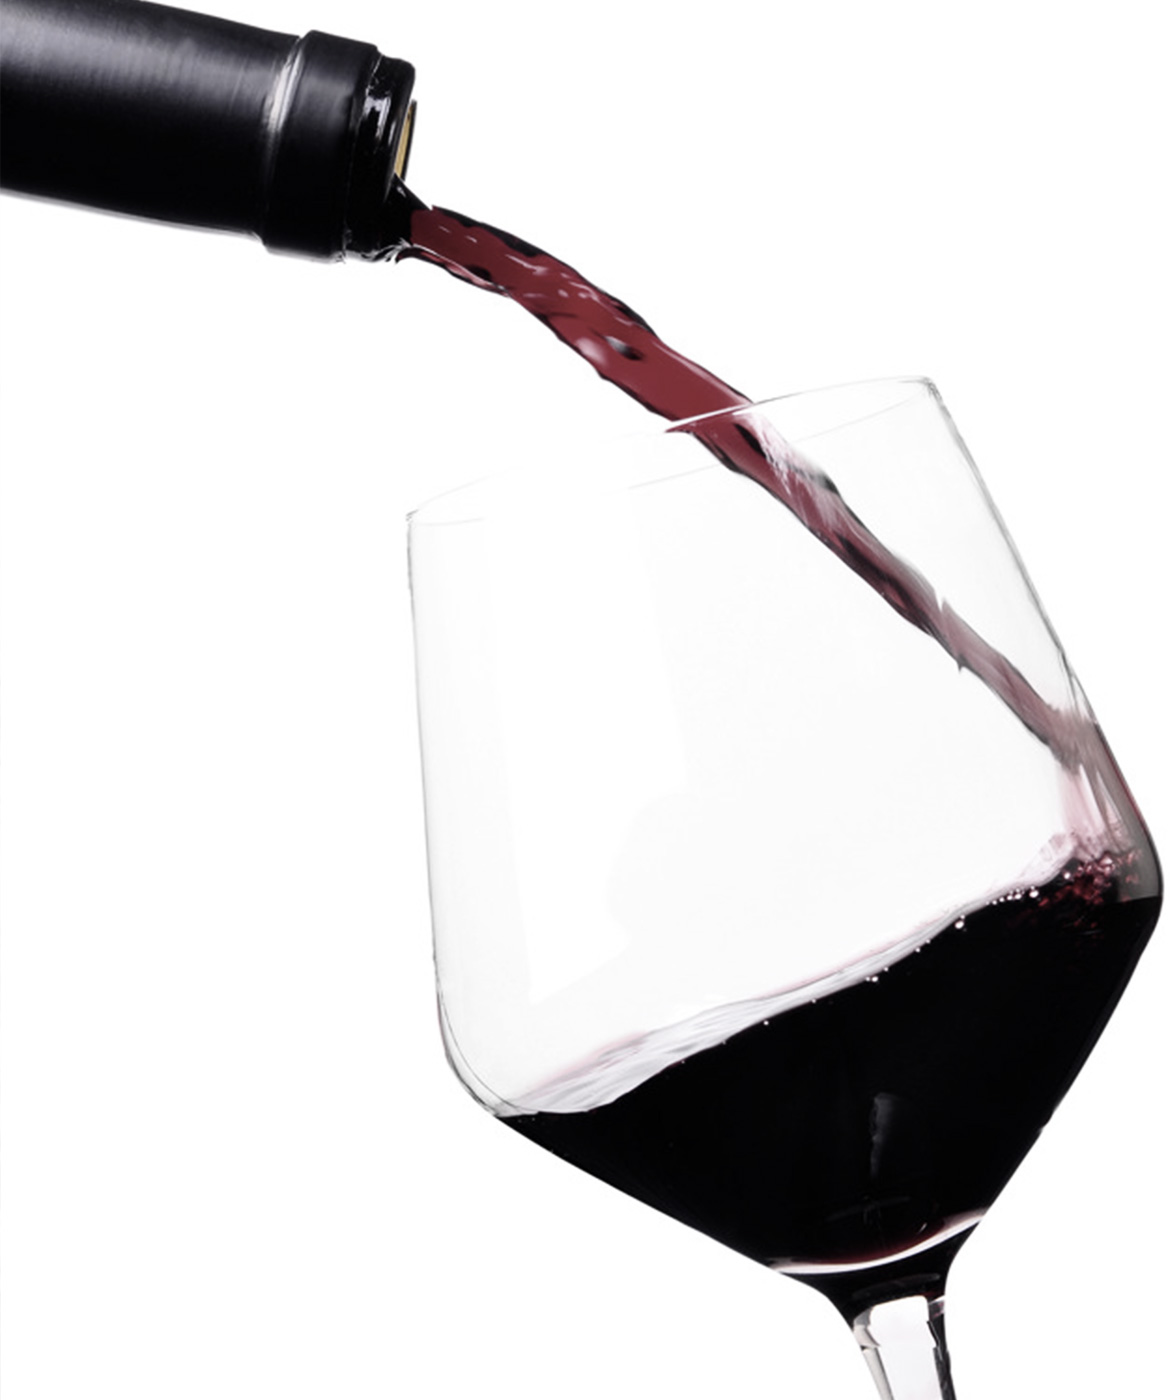 Villenoir Pinot Noir